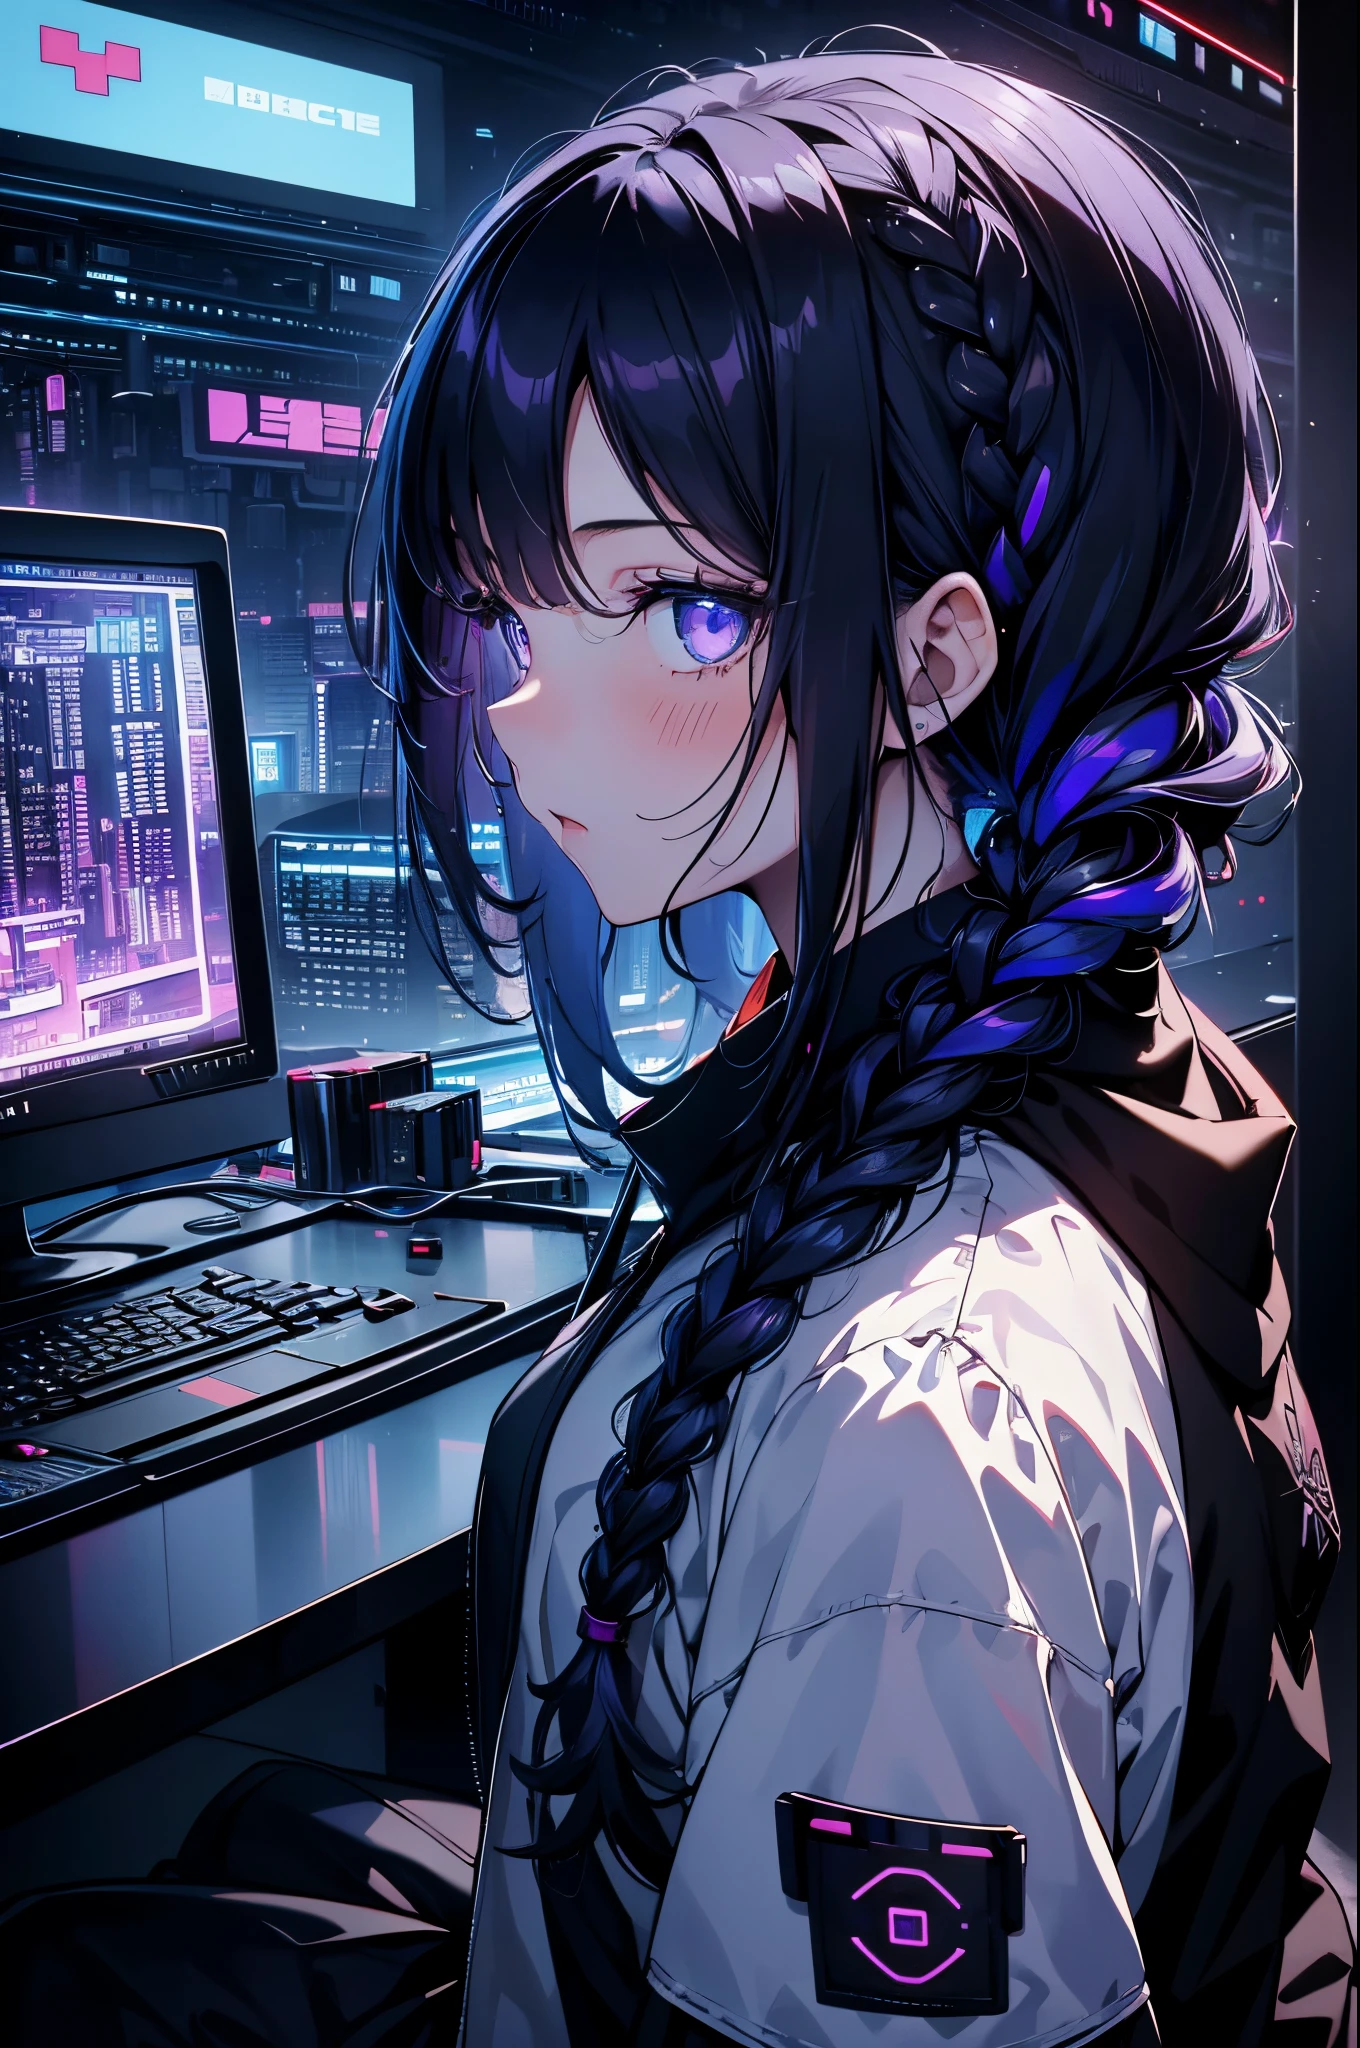 아주 어린 소녀, 검은 마스크, 하얀 피부, 컴퓨터의 코드, 해커 스타일, 곡선,에 앉아、옆에서 본、진한 보라색, 어두운, 머리끈, 어두운 blue hair, 케이블, 레트로, 사이버펑크, 데이터 센터 배경, 진한 보라색 테마, 밤의 도시